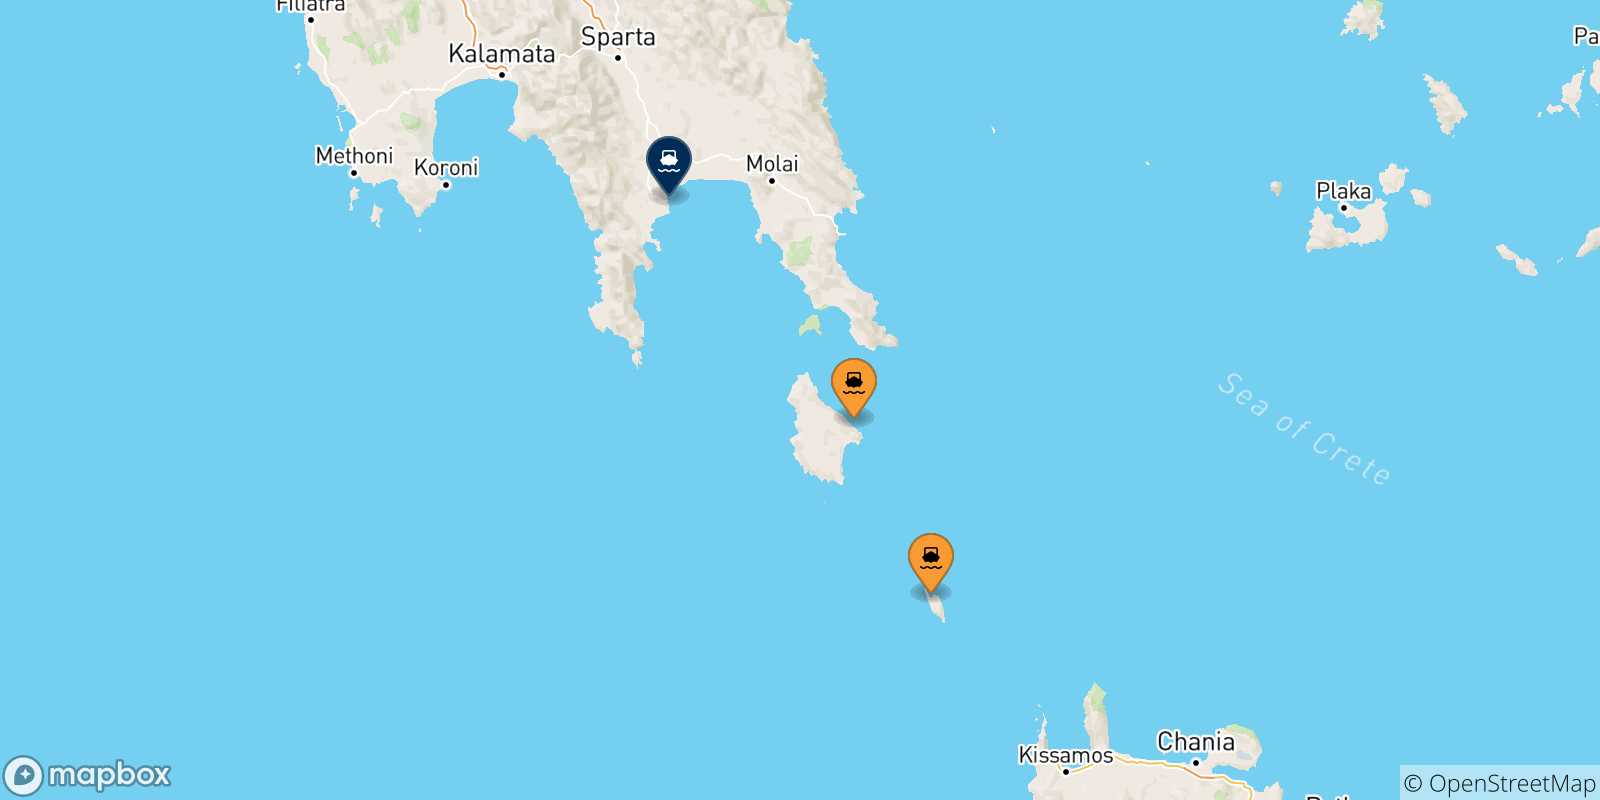 Mappa delle possibili rotte tra le Isole Ionie e Gythio